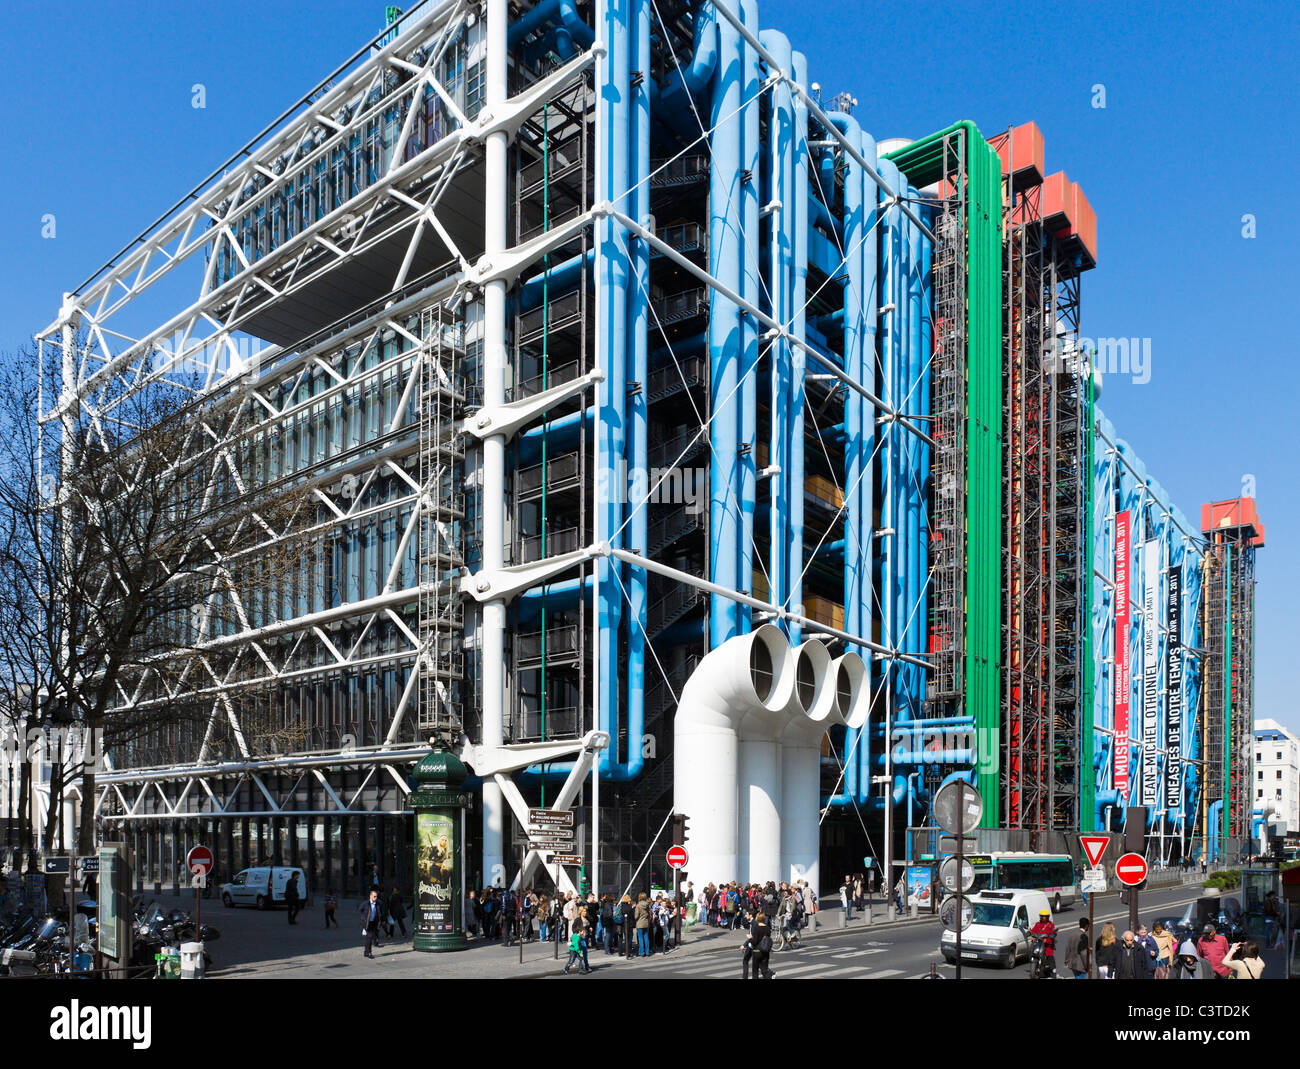 Centre Pompidou, quartier de Beaubourg, 4e arrondissement, Paris, France Banque D'Images